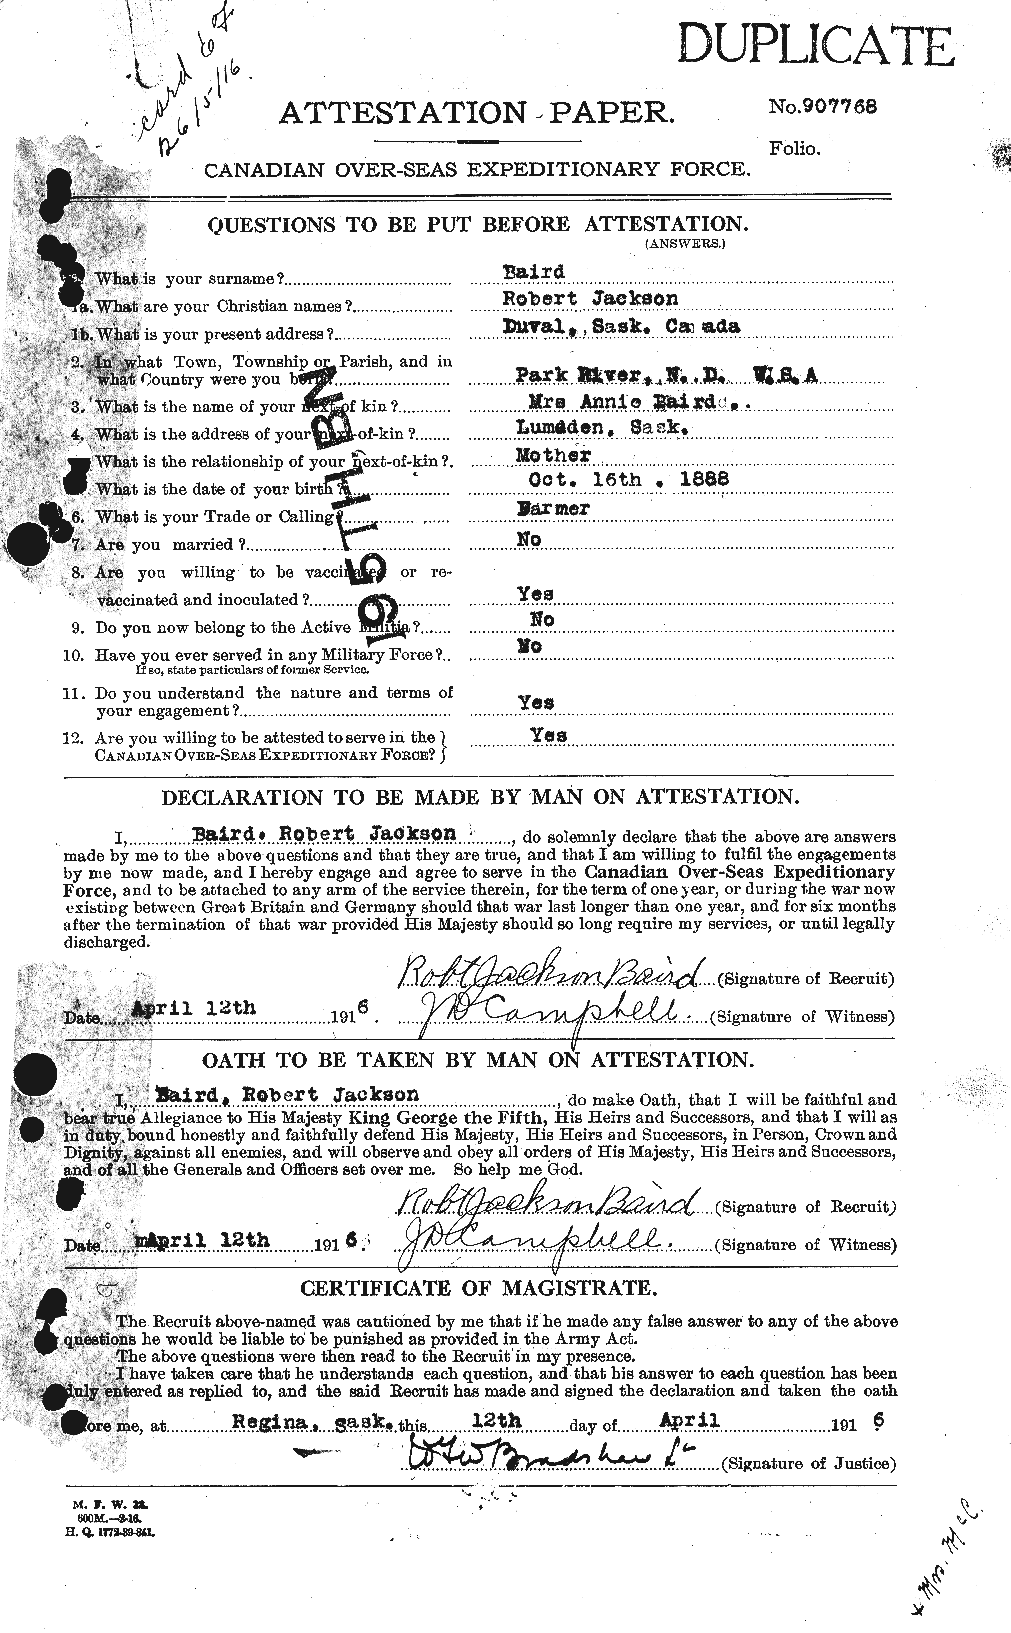 Dossiers du Personnel de la Première Guerre mondiale - CEC 226565a